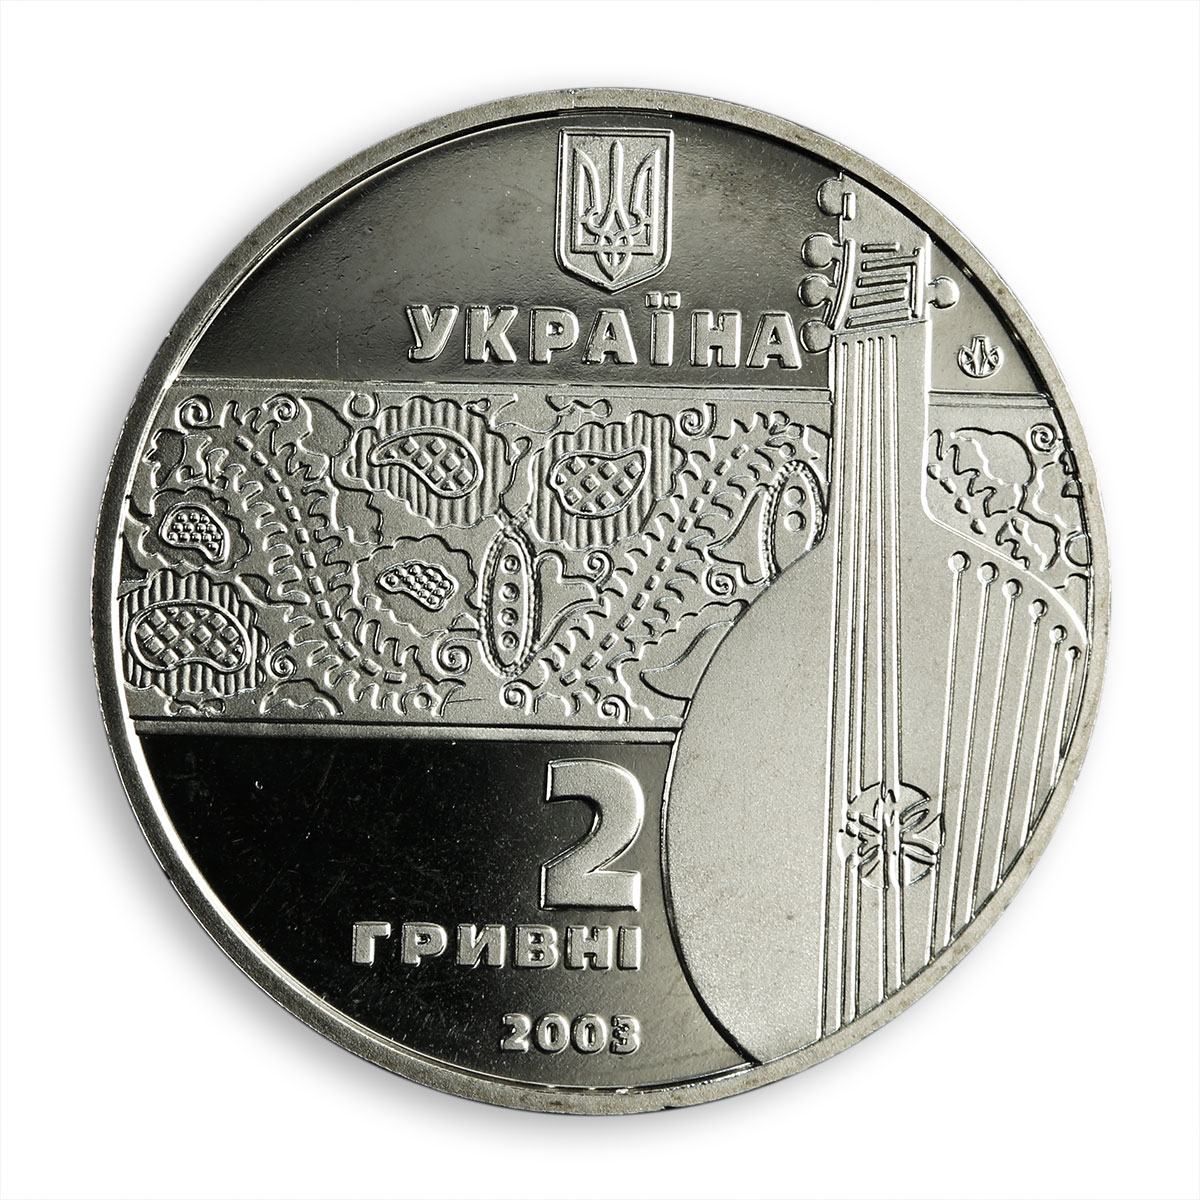 Ukraine 2 hryvnia Ostap Veresai blind kobzar musician bandura nickel coin 2003